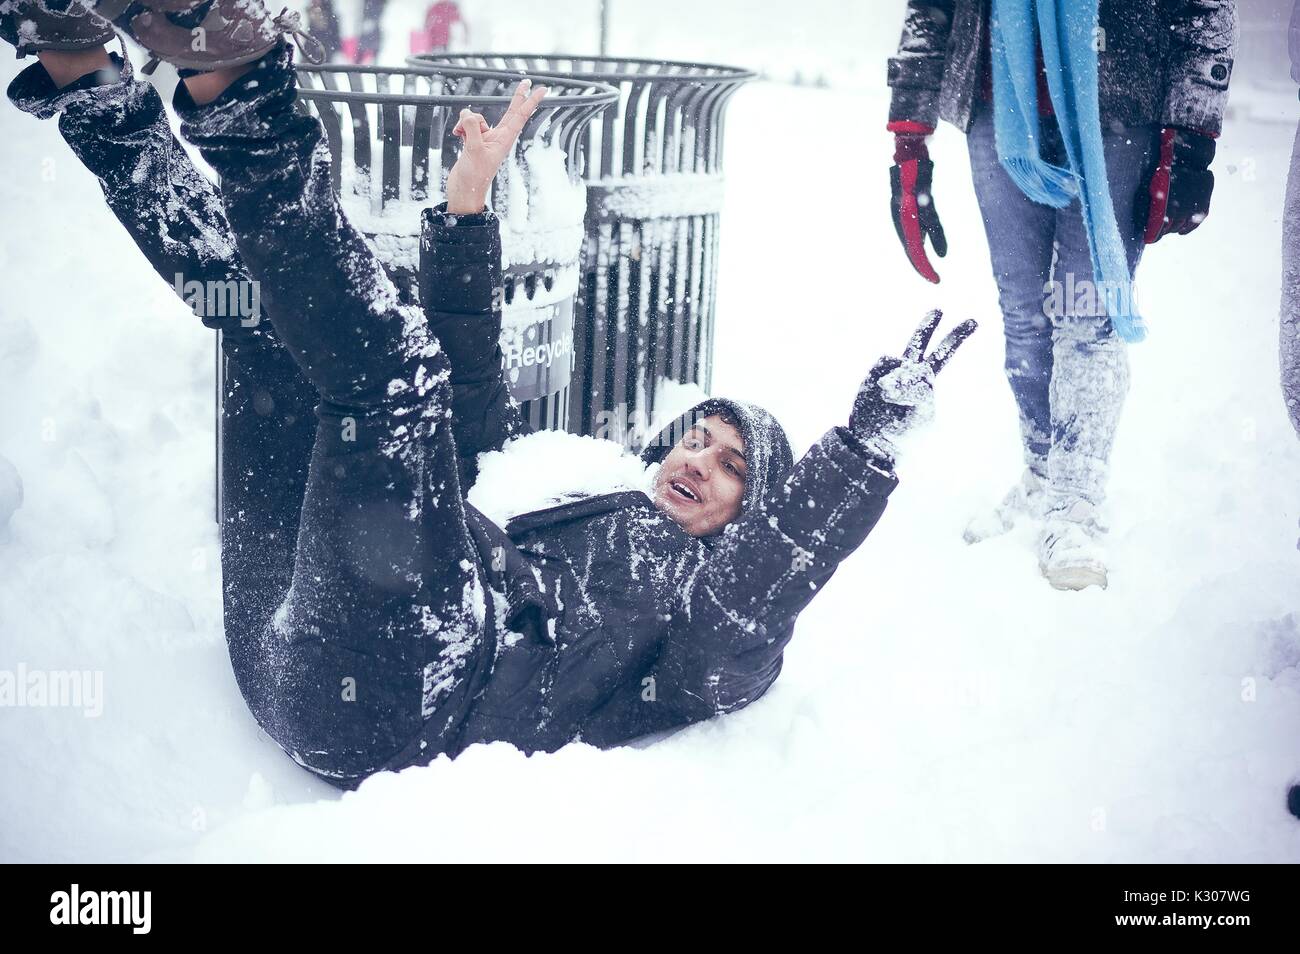 Un étudiant sourit et s'assoit dans la neige sur le dos avec les bras et jambes en l'air après avoir glissé le harfang escaliers pendant un jour de neige à la Johns Hopkins University, Baltimore, Maryland, 2016. Banque D'Images